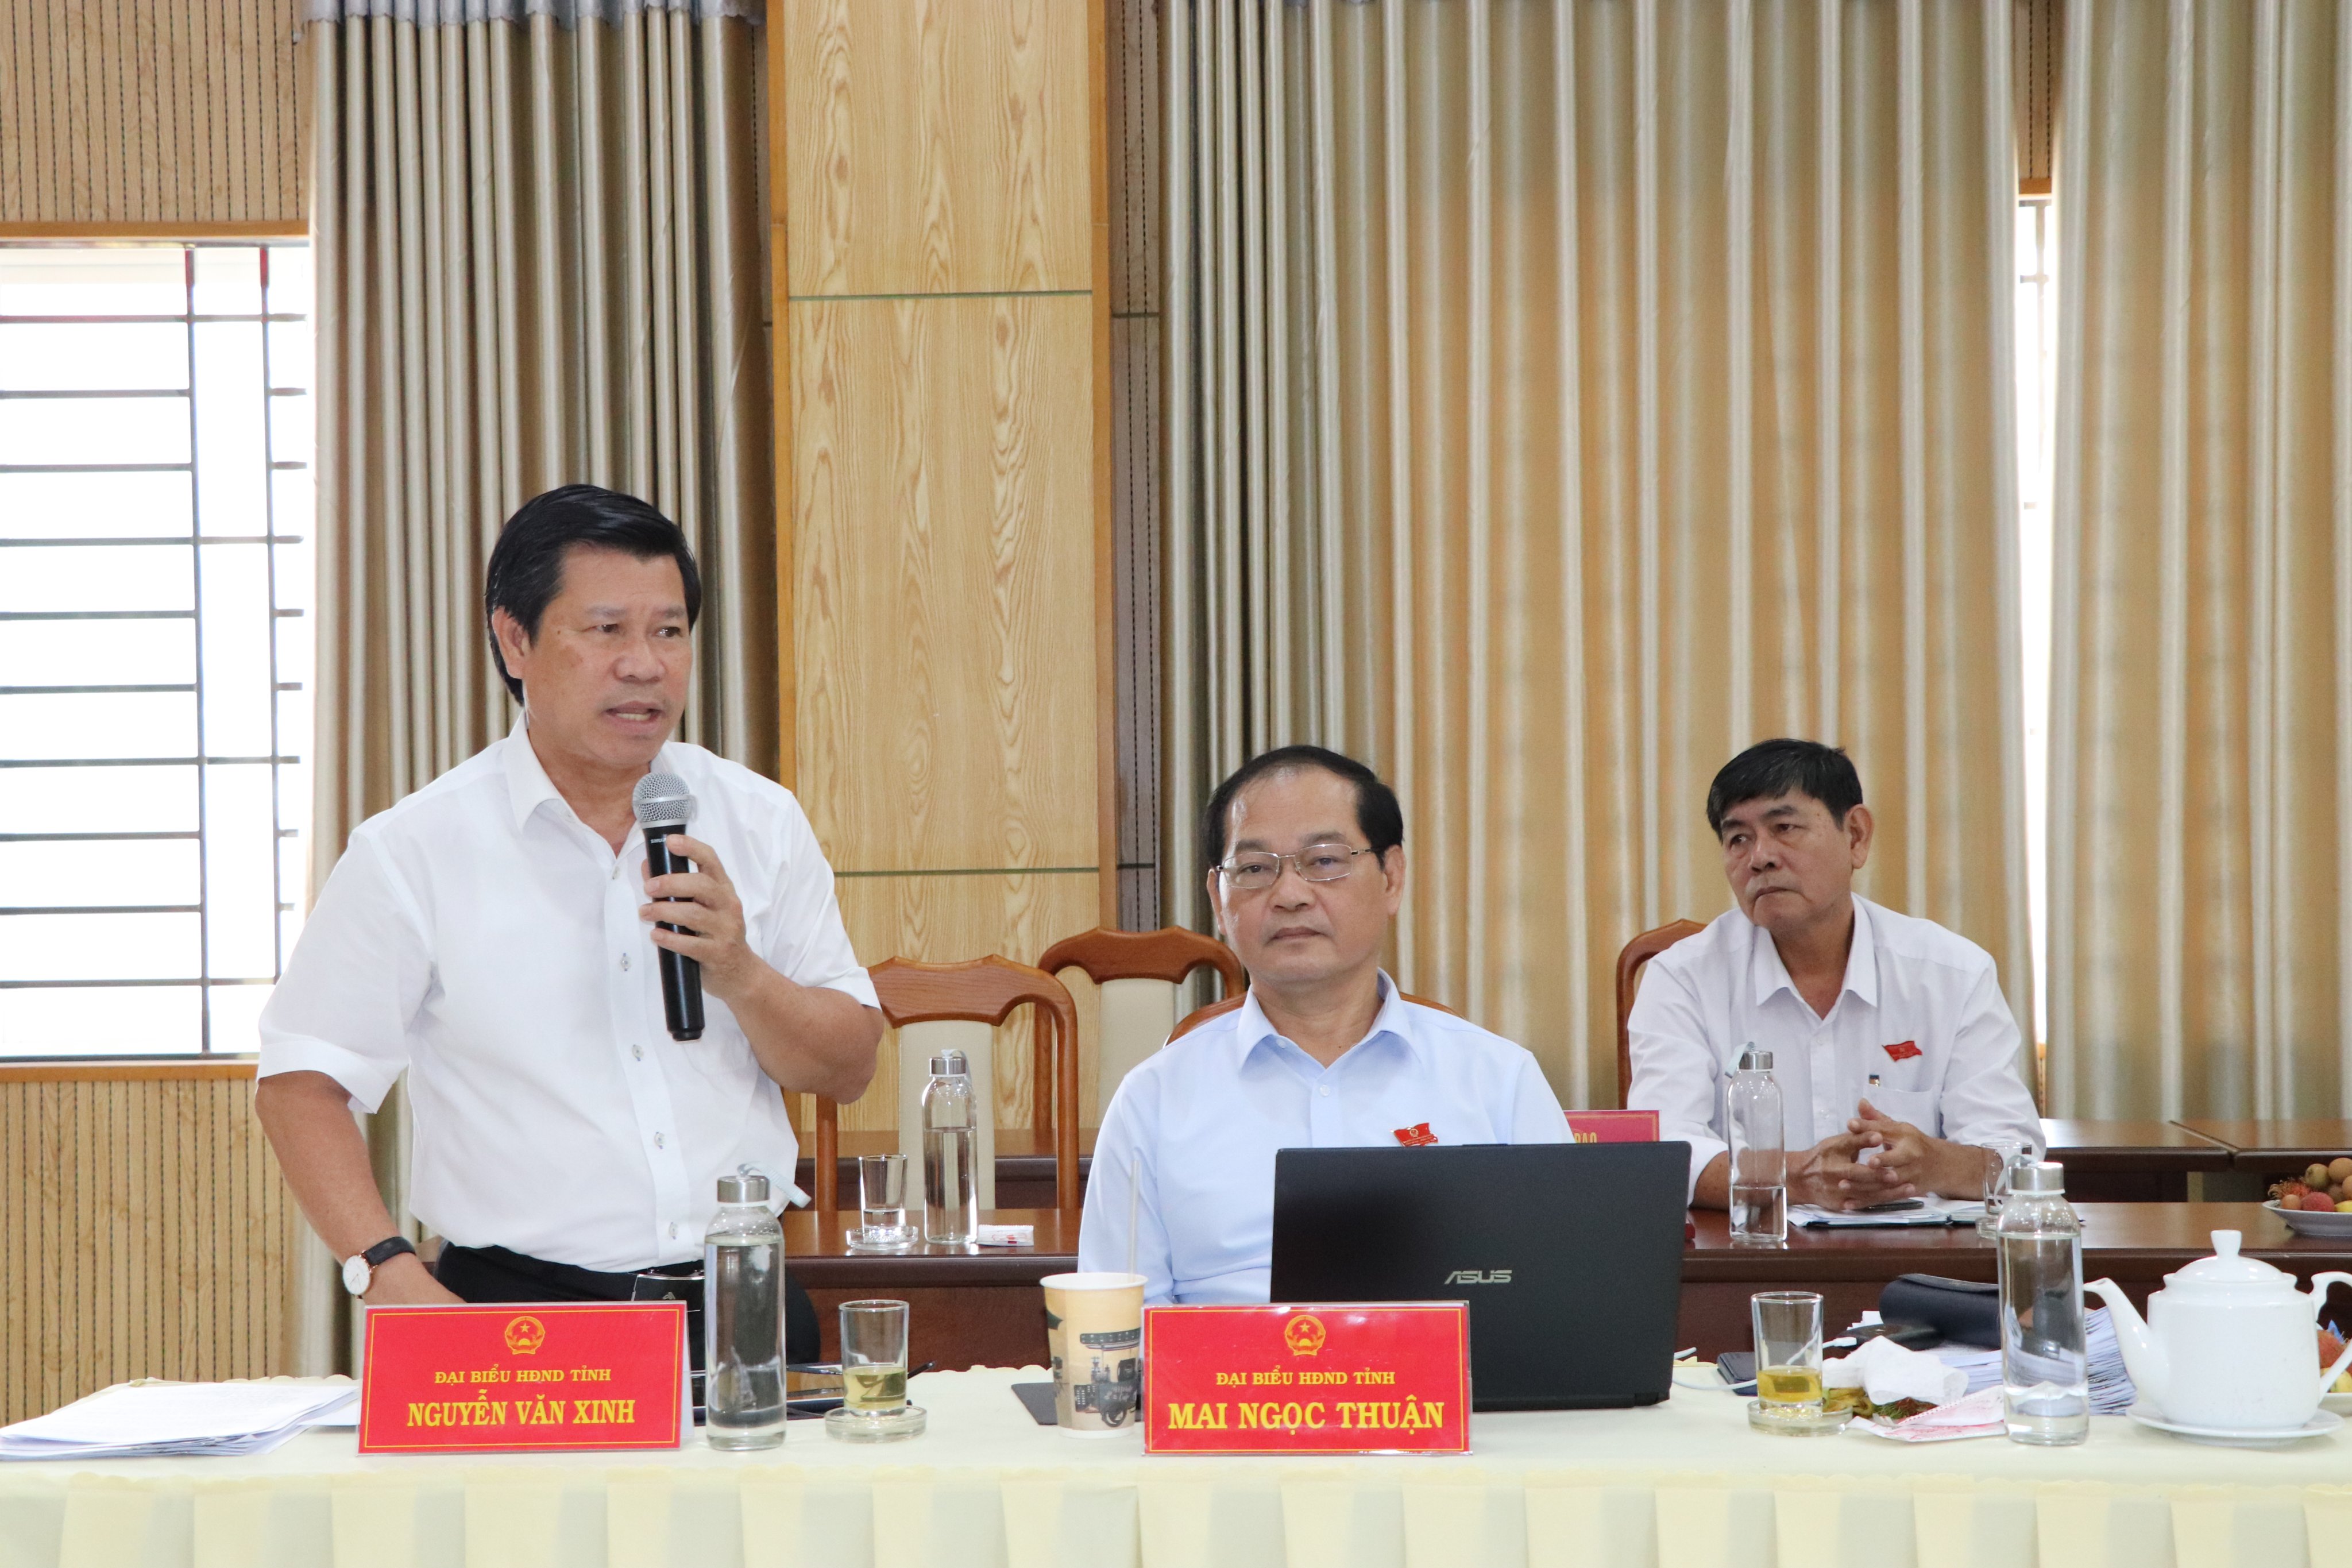 Đại biểu Nguyễn Văn Xinh, Ủy viên Ban Thường vụ Tỉnh ủy, Trưởng Ban Tuyên giáo Tỉnh ủy đề nghị các địa phương cần quan tâm hơn nữa hoạt động các Trung tâm Văn hóa học tập cộng đồng các xã.